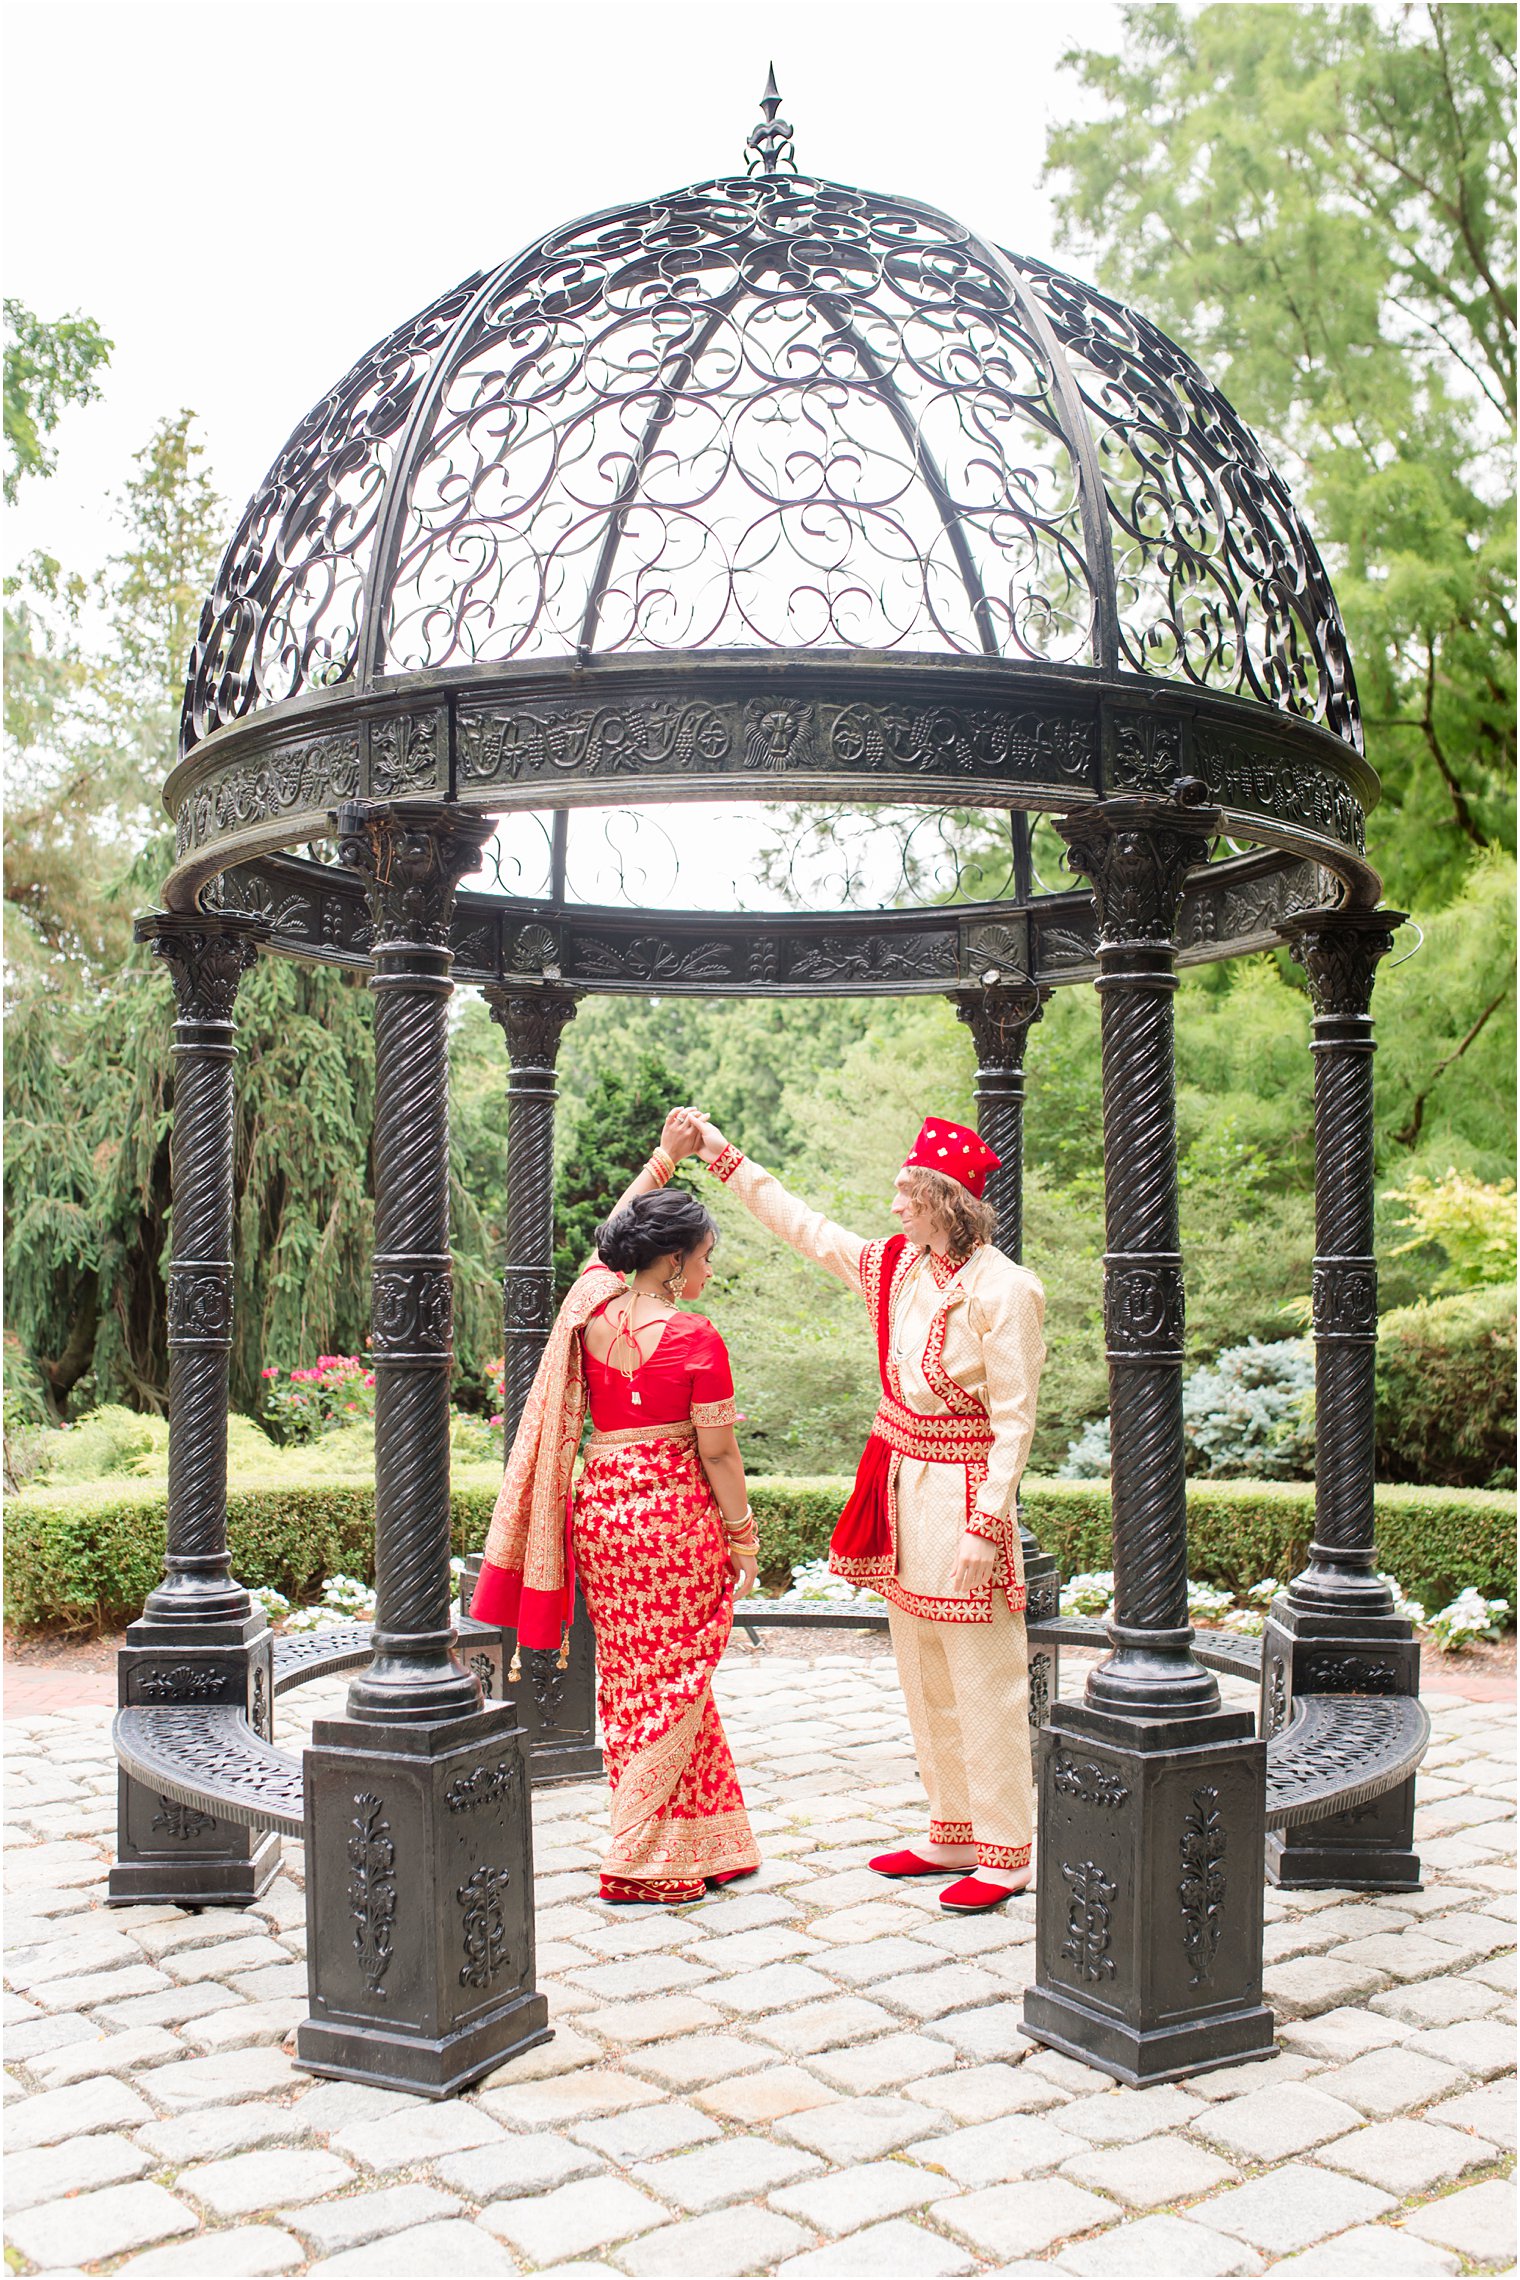 groom twirls bride under gazebo at Ashford Estate in traditional Indian wedding attire 